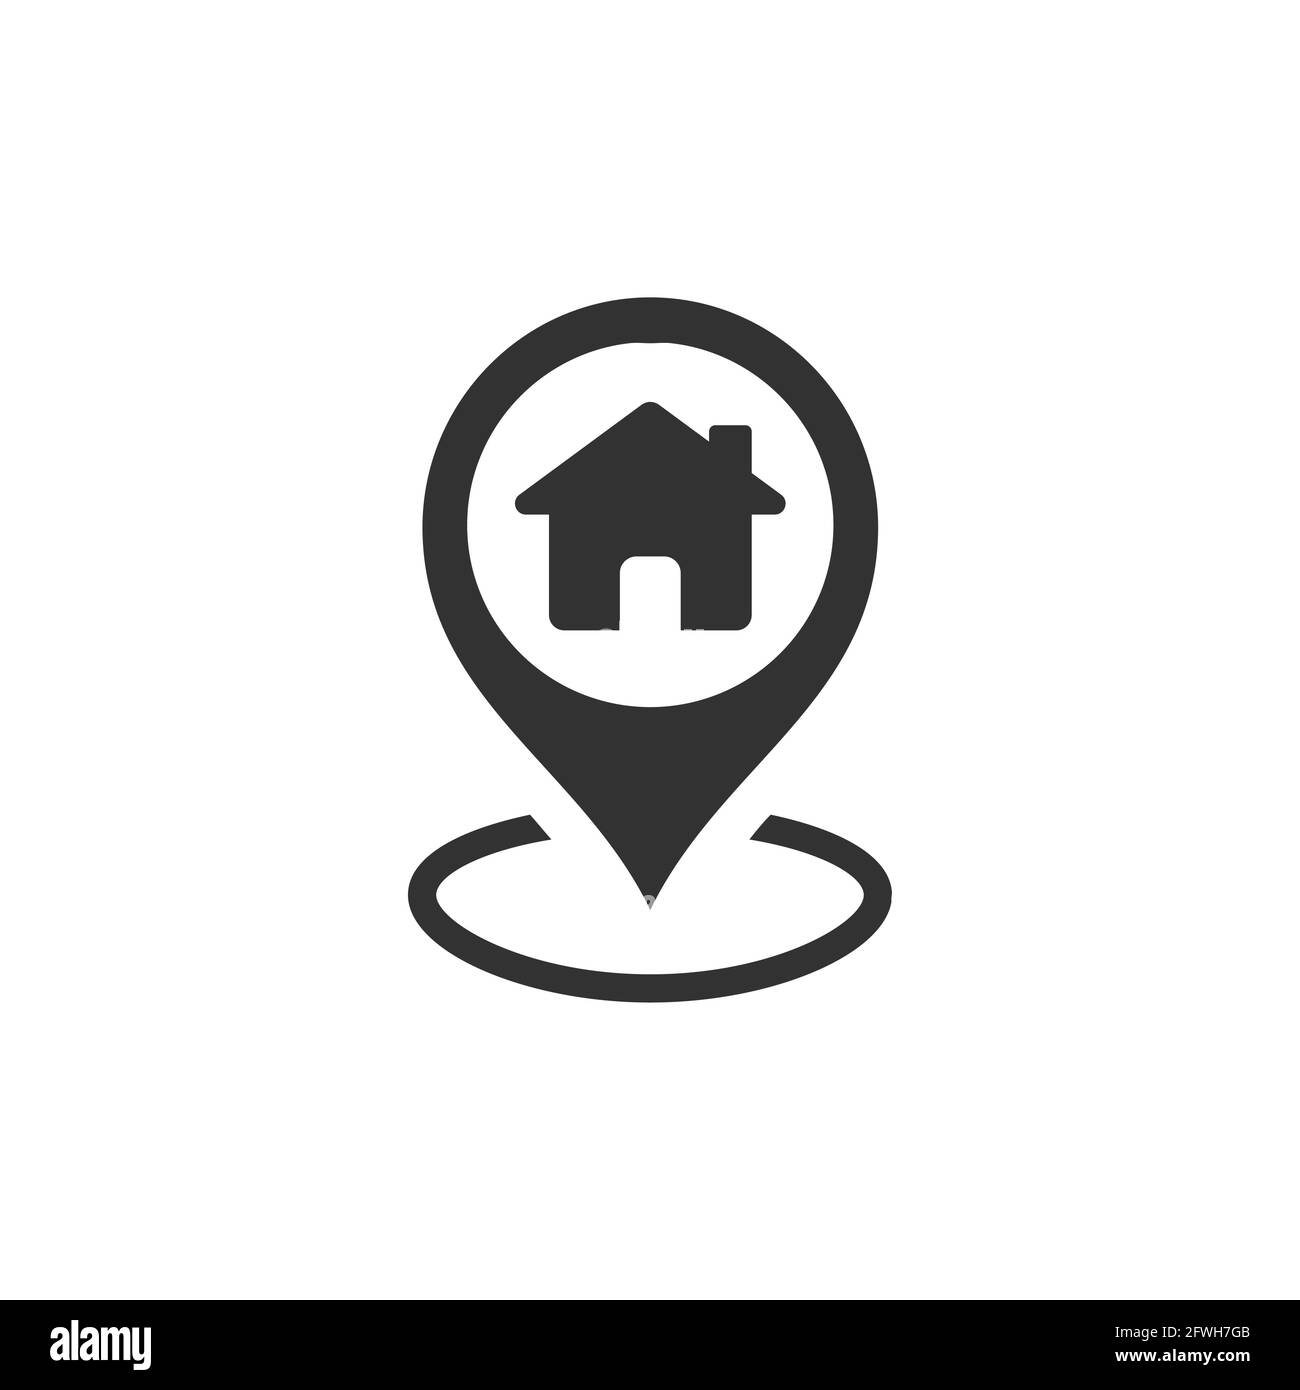 Positionsnadel mit schwarzem Vektor-Symbol für das Haus. Zeigersymbol für die Startmarkierung. Stock Vektor